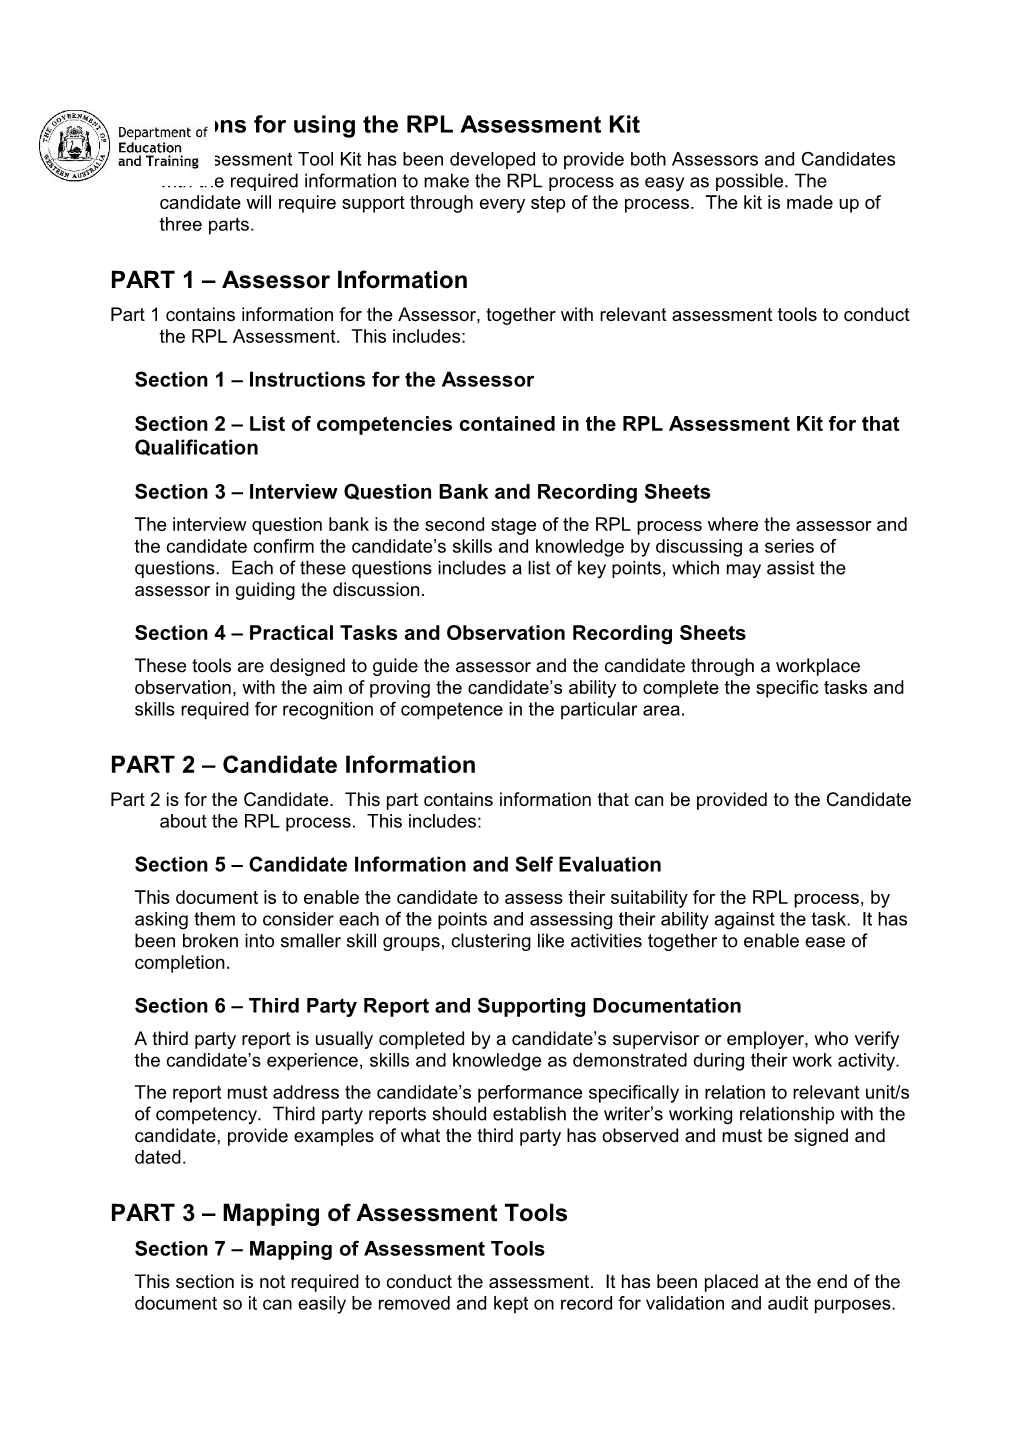 Instructions for Using the RPL Assessment Kit